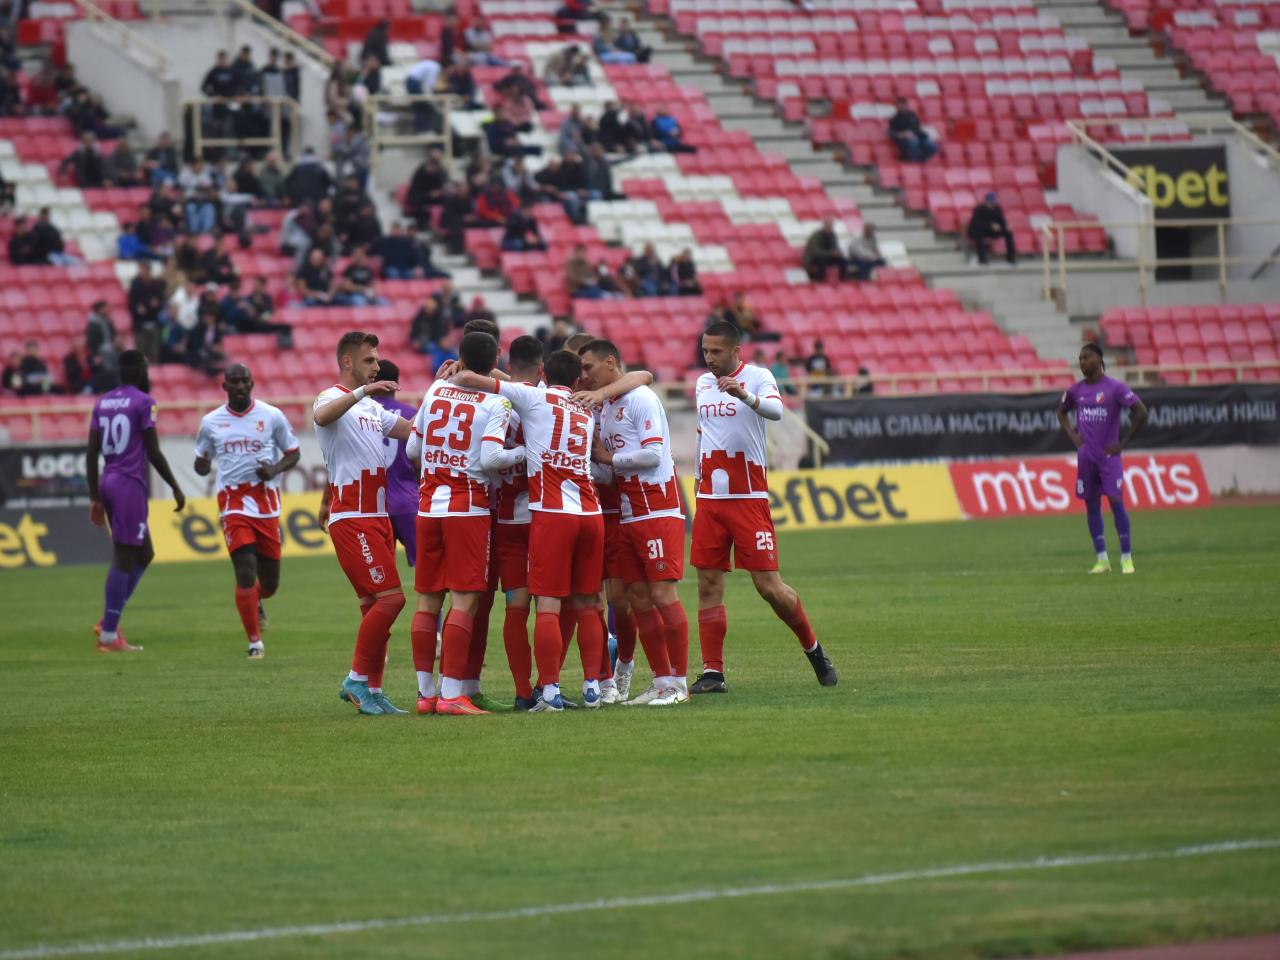 Čukarički pobedio Radnički Niš sa 1:0 na otvaranju Superlige, Spartak bolji  od IMT-a 2:1 - Sportal